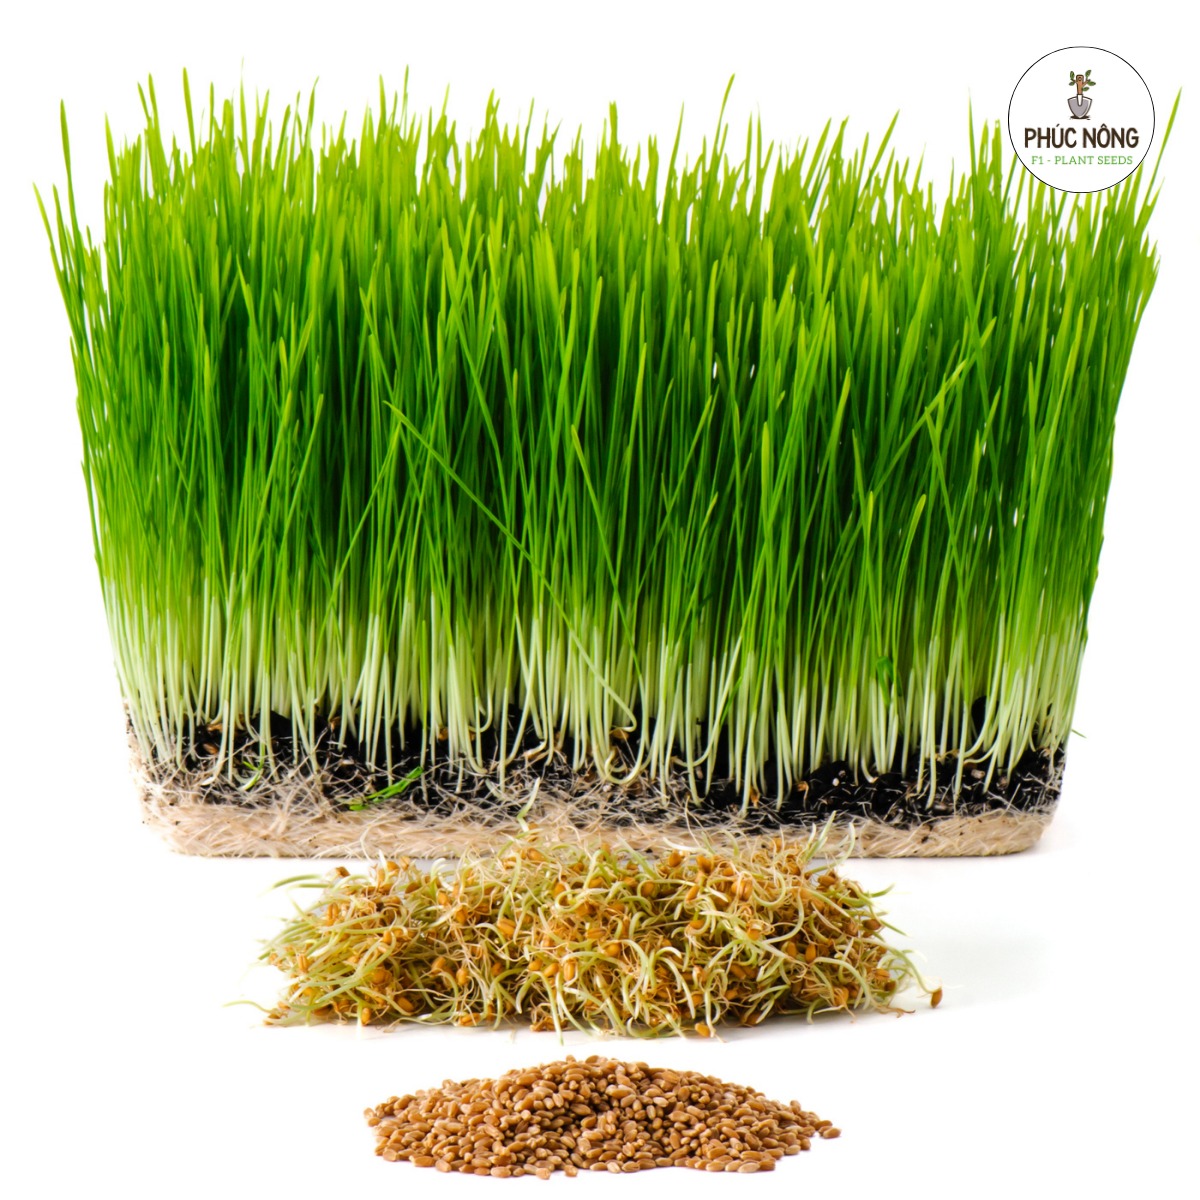 Hạt giống cỏ lúa mạch hay được gọi là cỏ lúa mì